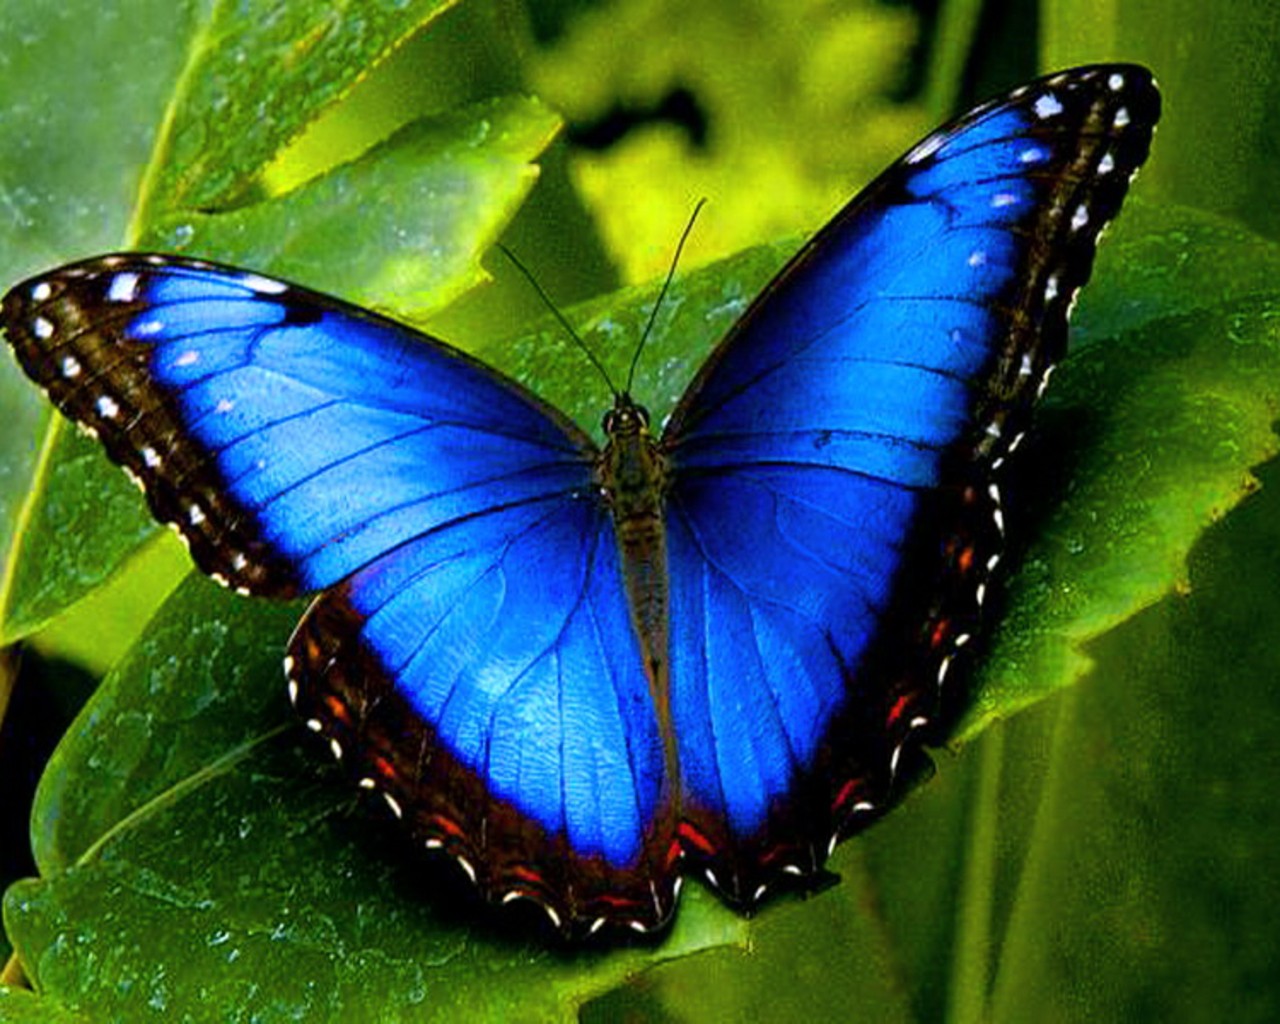 blue butterfly wallpaper 2